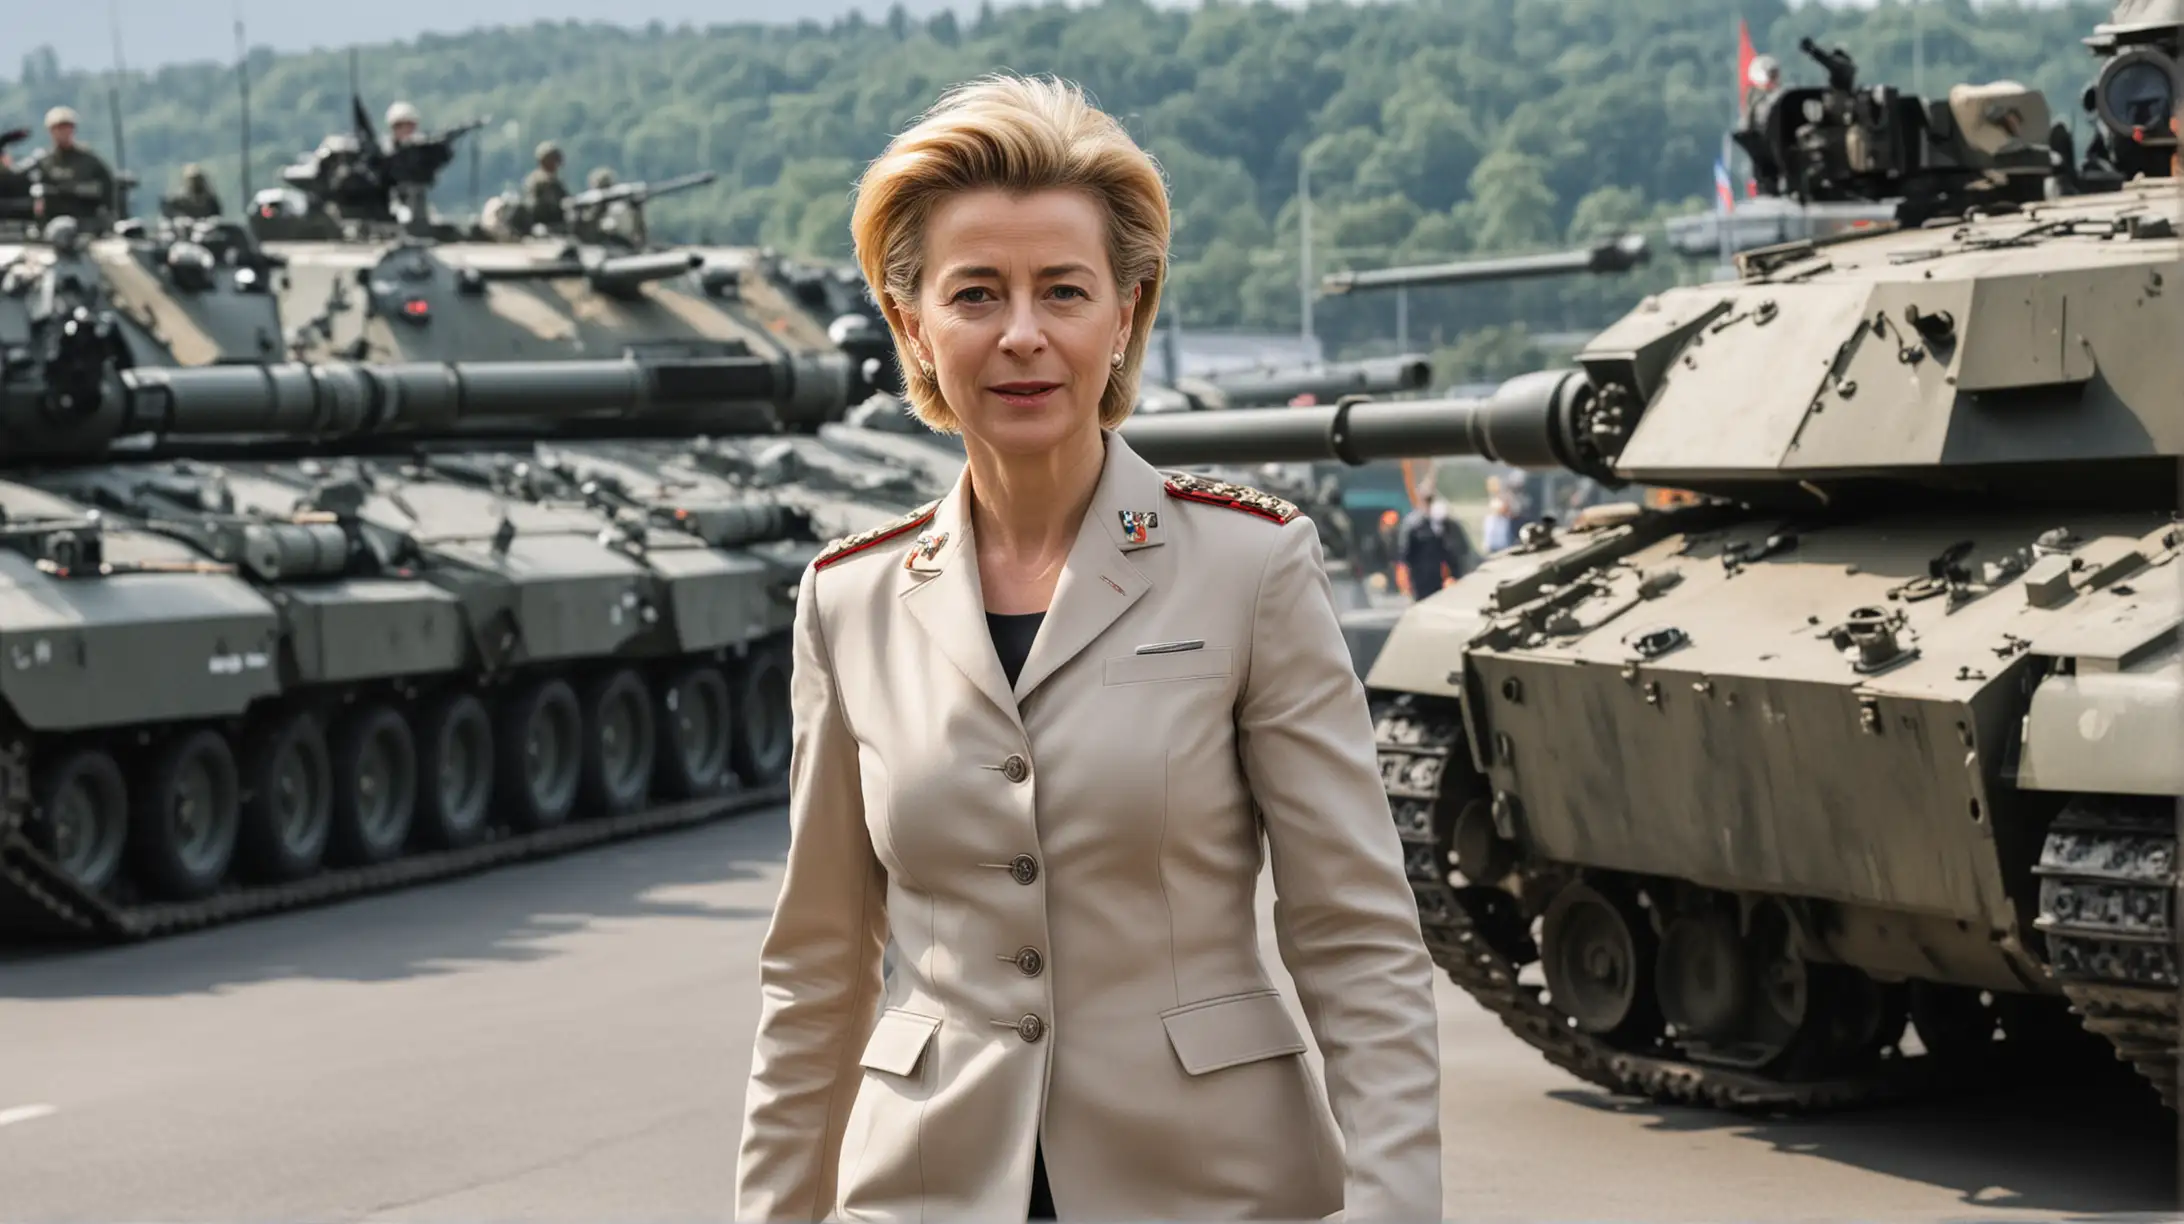 Ursula von der Leyen in Military Uniform Leading Tanks